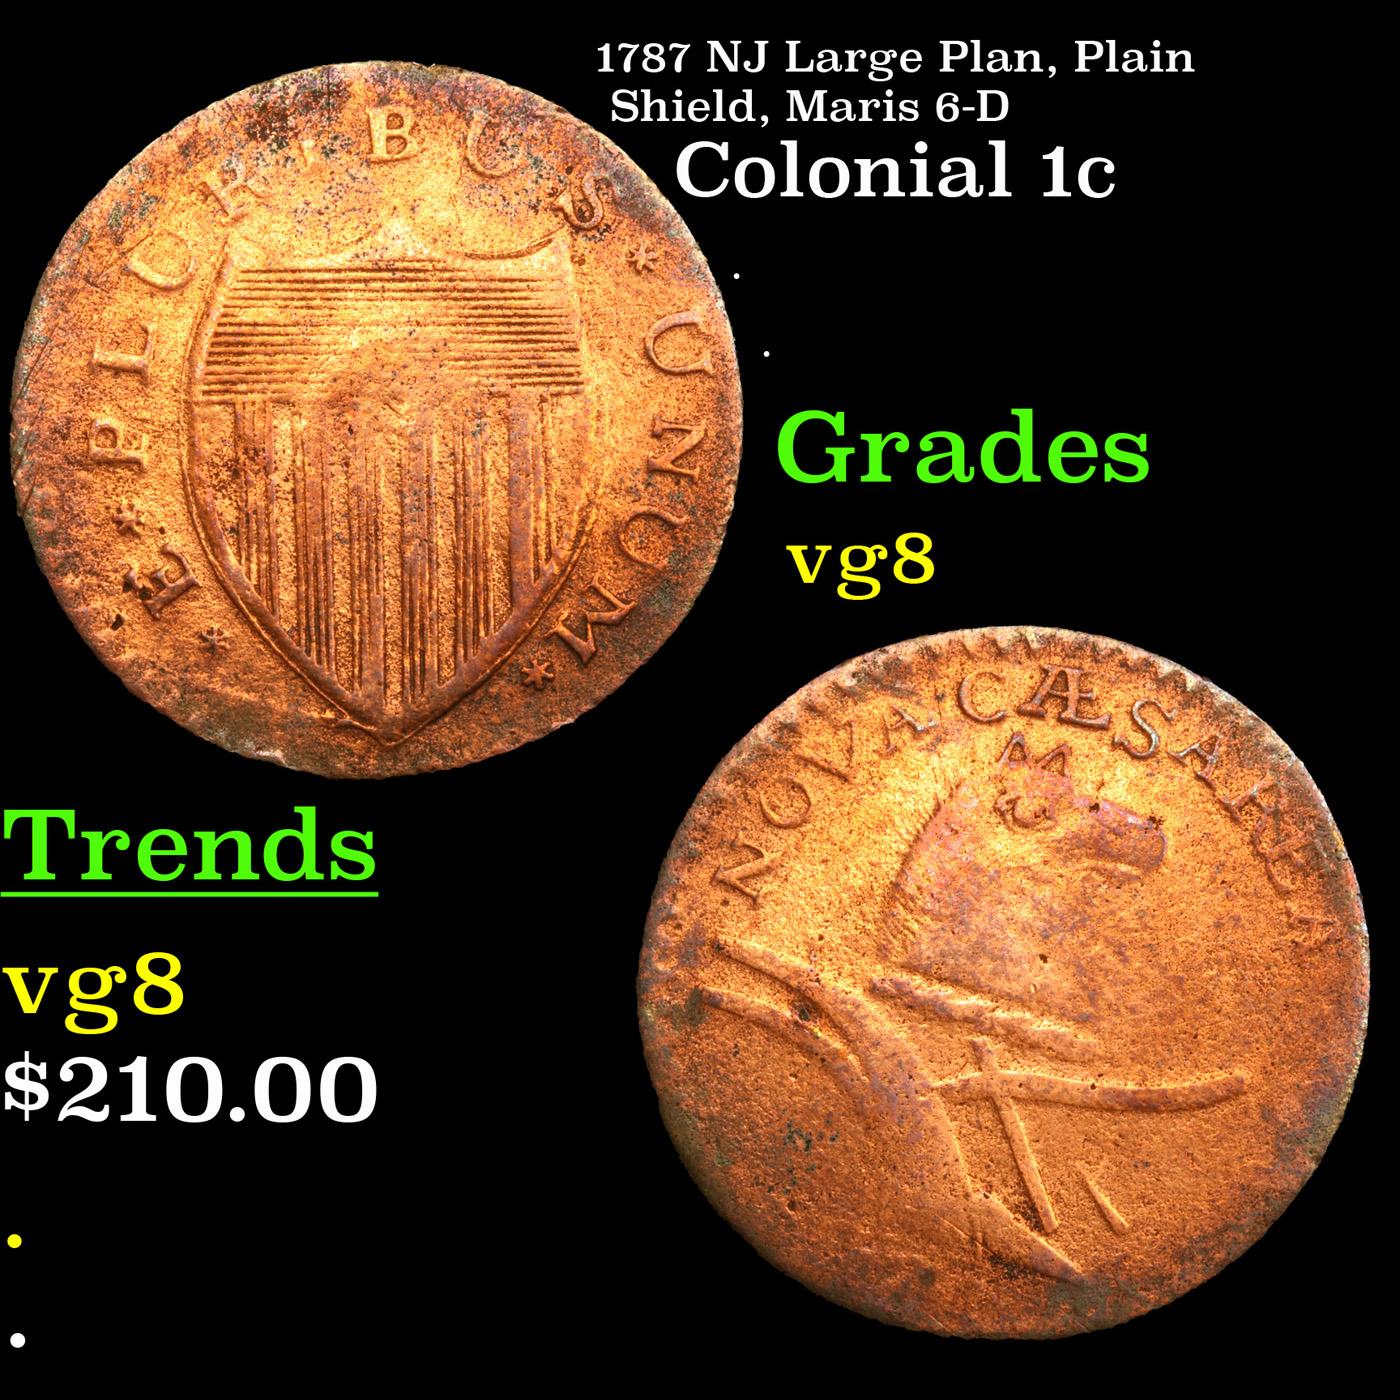 1787 NJ Large Plan, Plain Shield, Maris 6-D Colonial Cent 1c Grades vg, very good